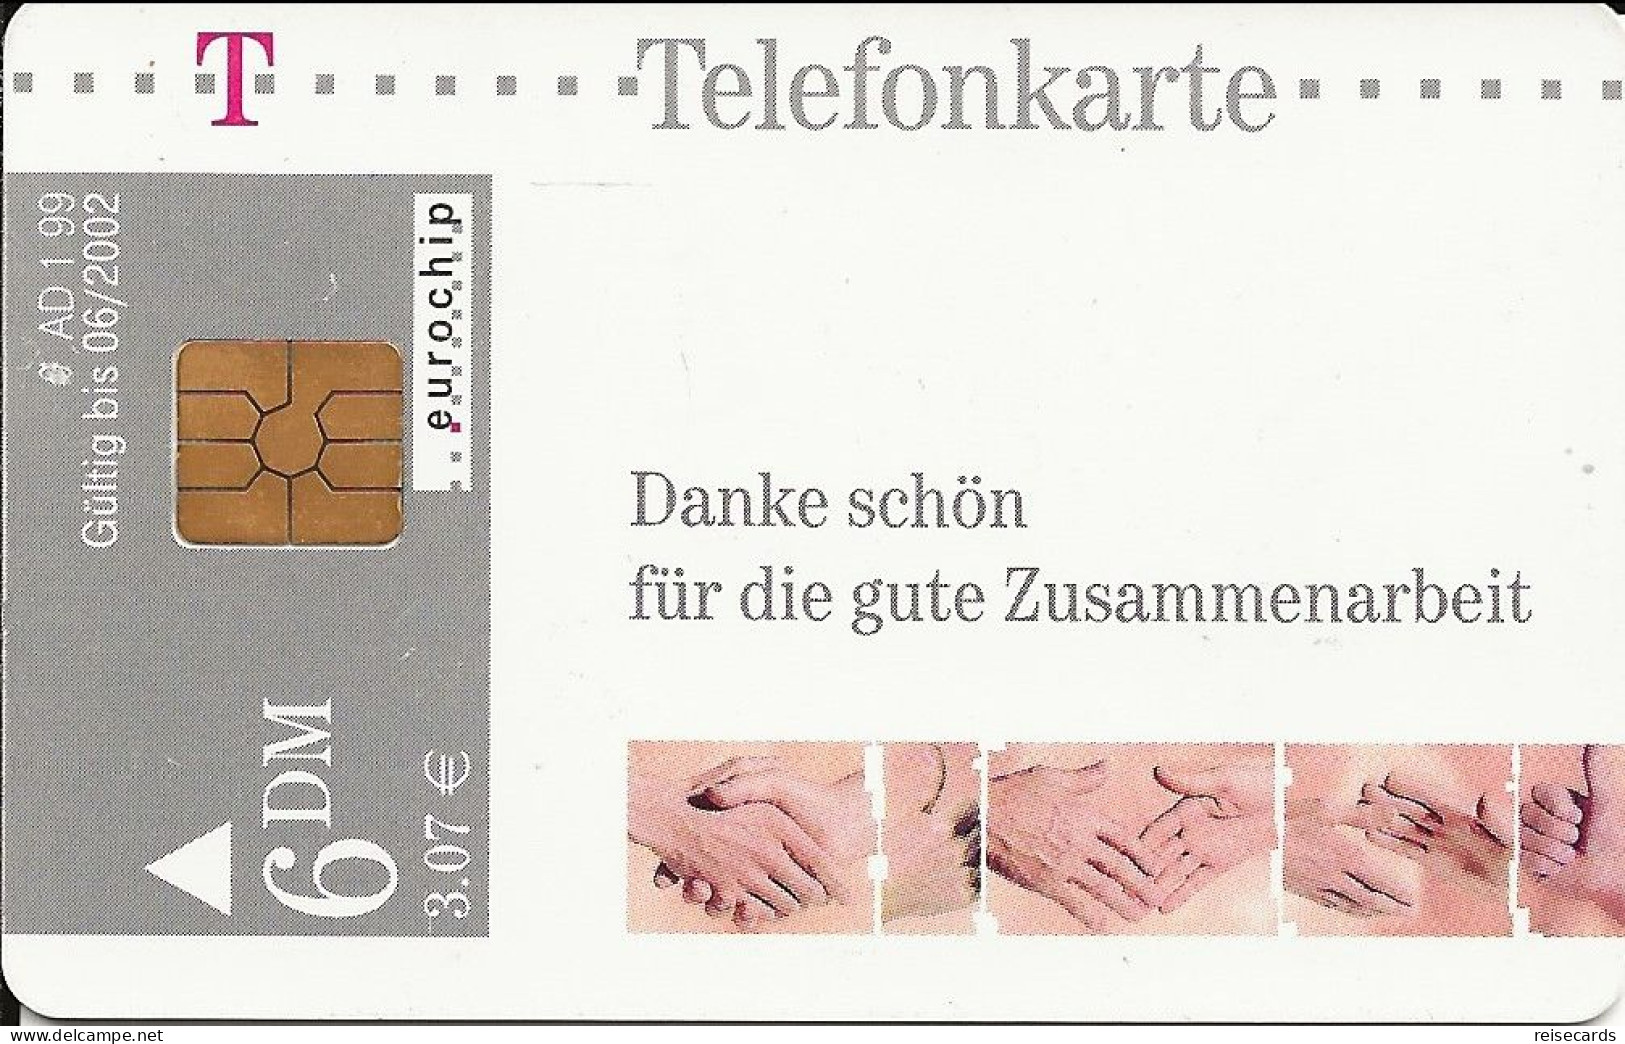 Germany: Telekom AD 1 99 Danke Schön Für Die Gute Zusammenarbeit - A + AD-Serie : Pubblicitarie Della Telecom Tedesca AG